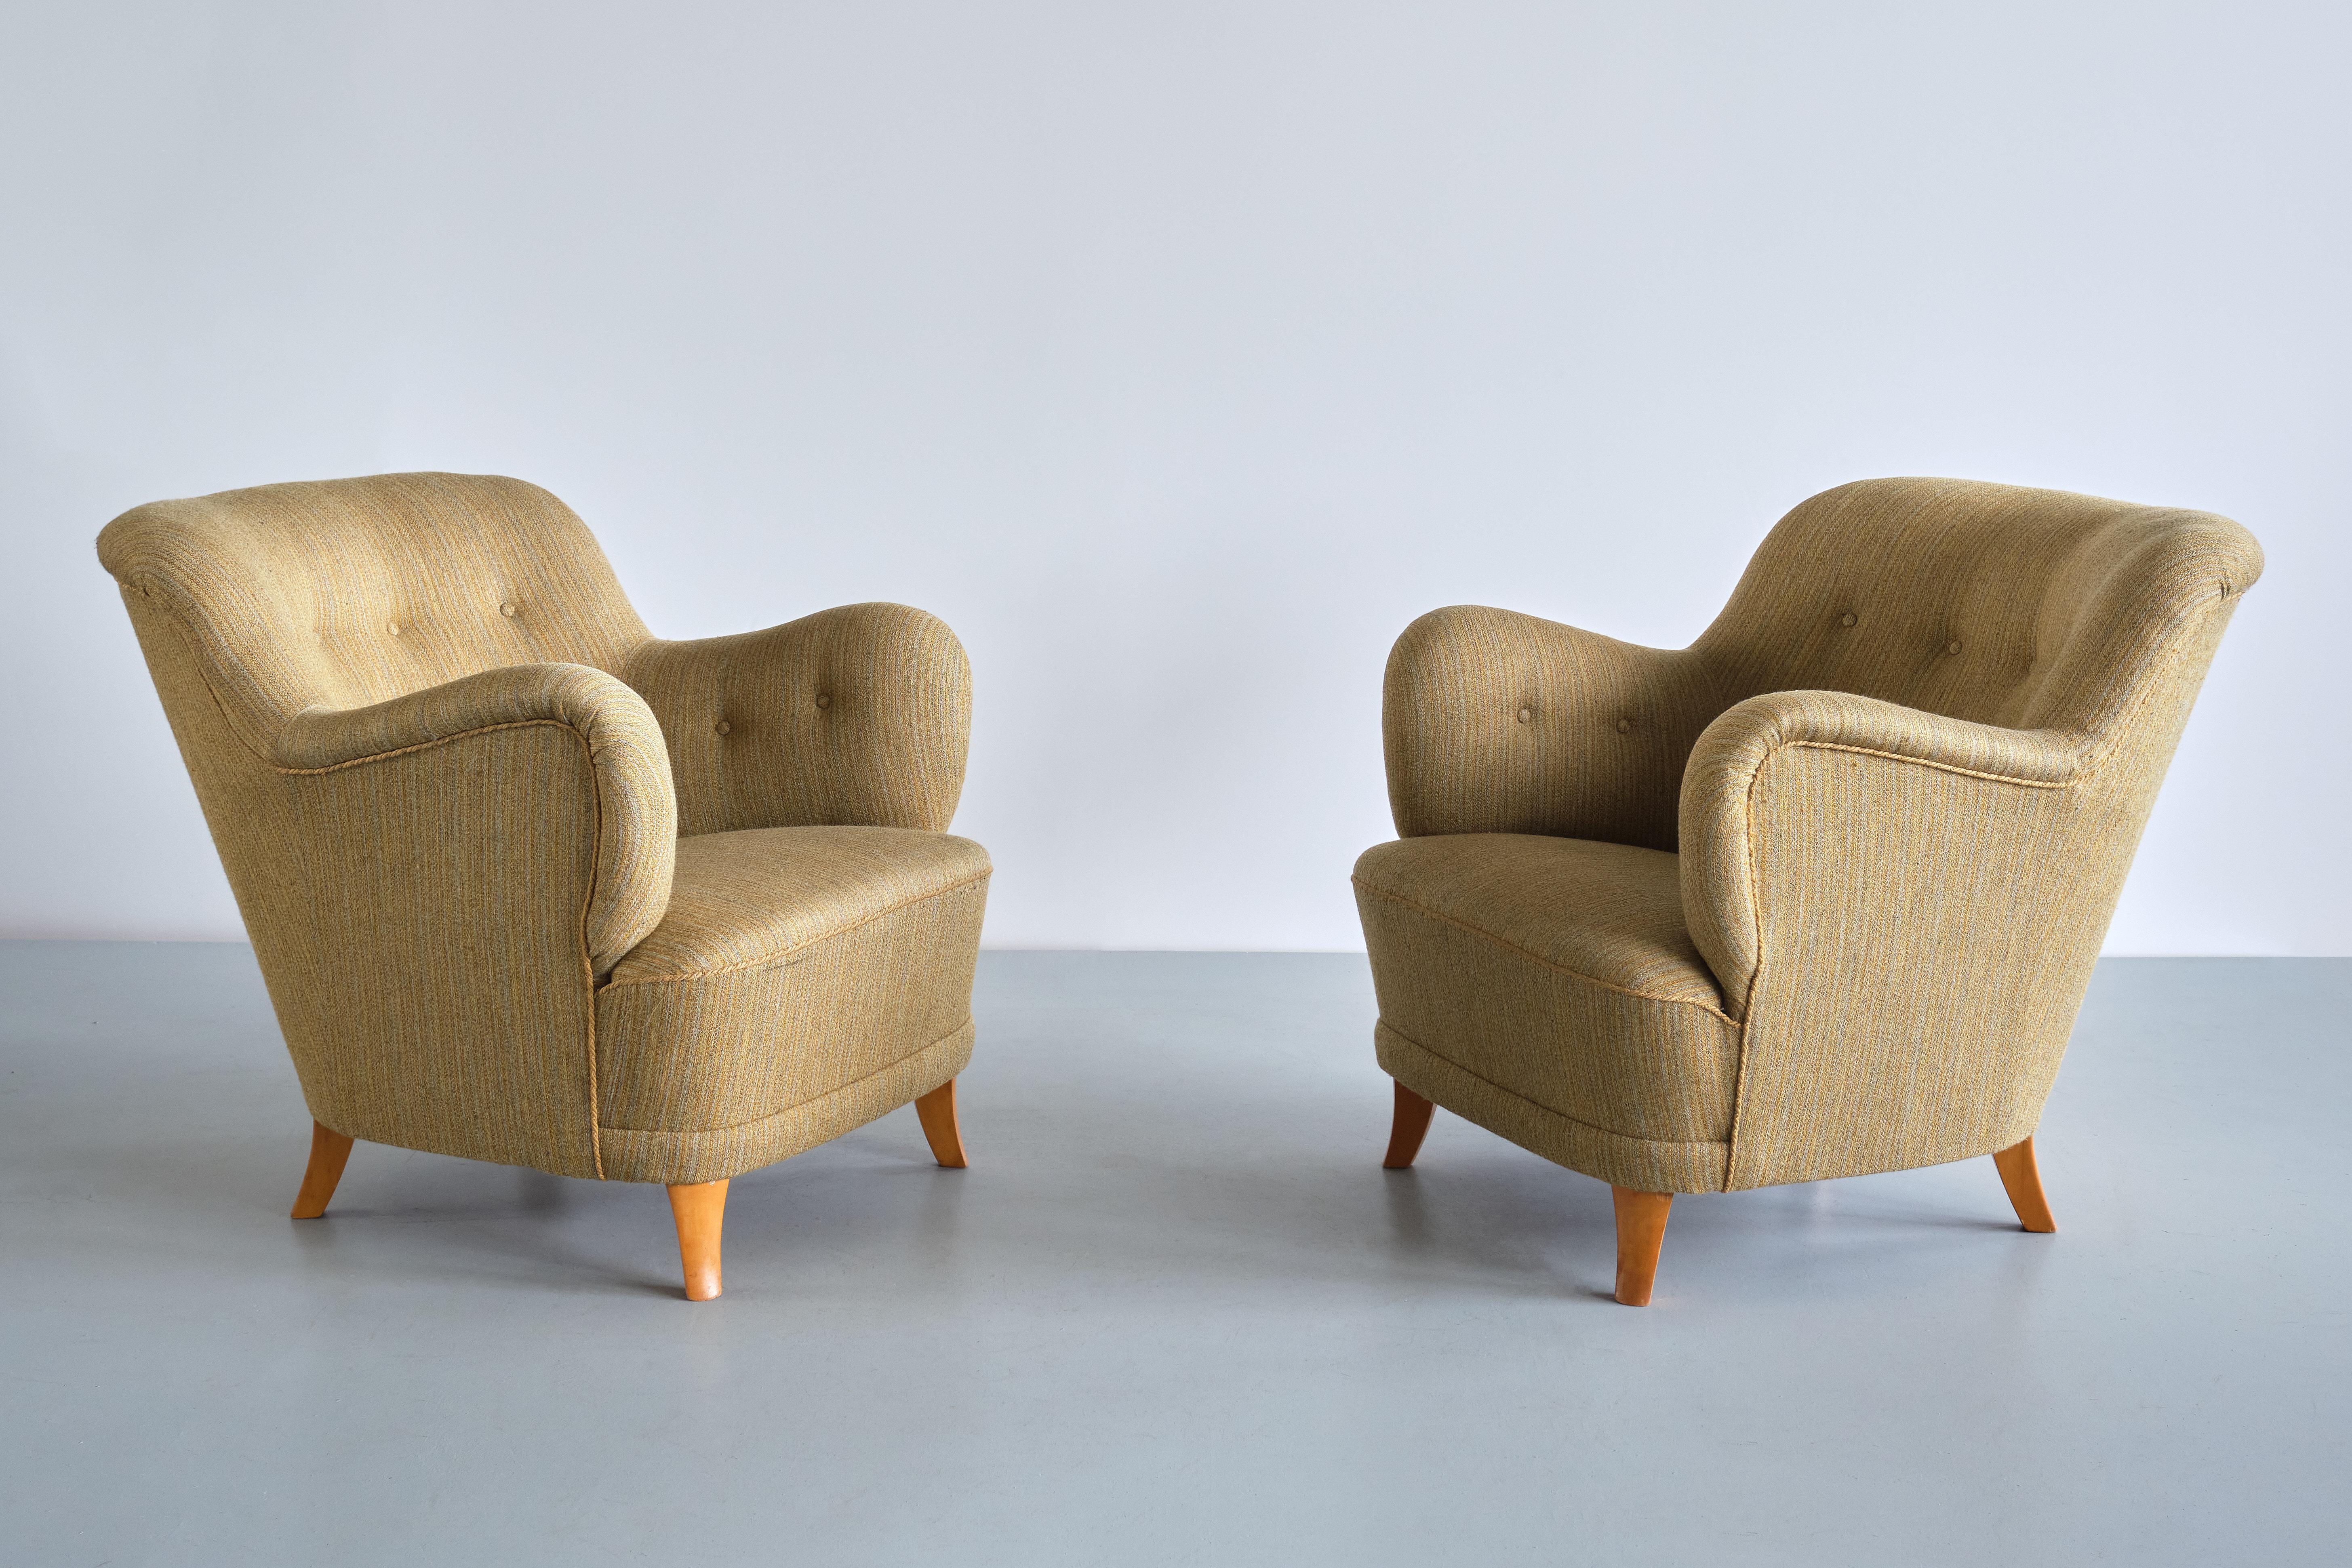 Cette rare paire de fauteuils a été conçue par Gustav Axel Berg à la fin des années 1940. Les chaises ont été fabriquées par AB G.A., la société de Berg. Bergs en Suède.
Le design saisissant est marqué par les accoudoirs sculpturaux et arrondis et